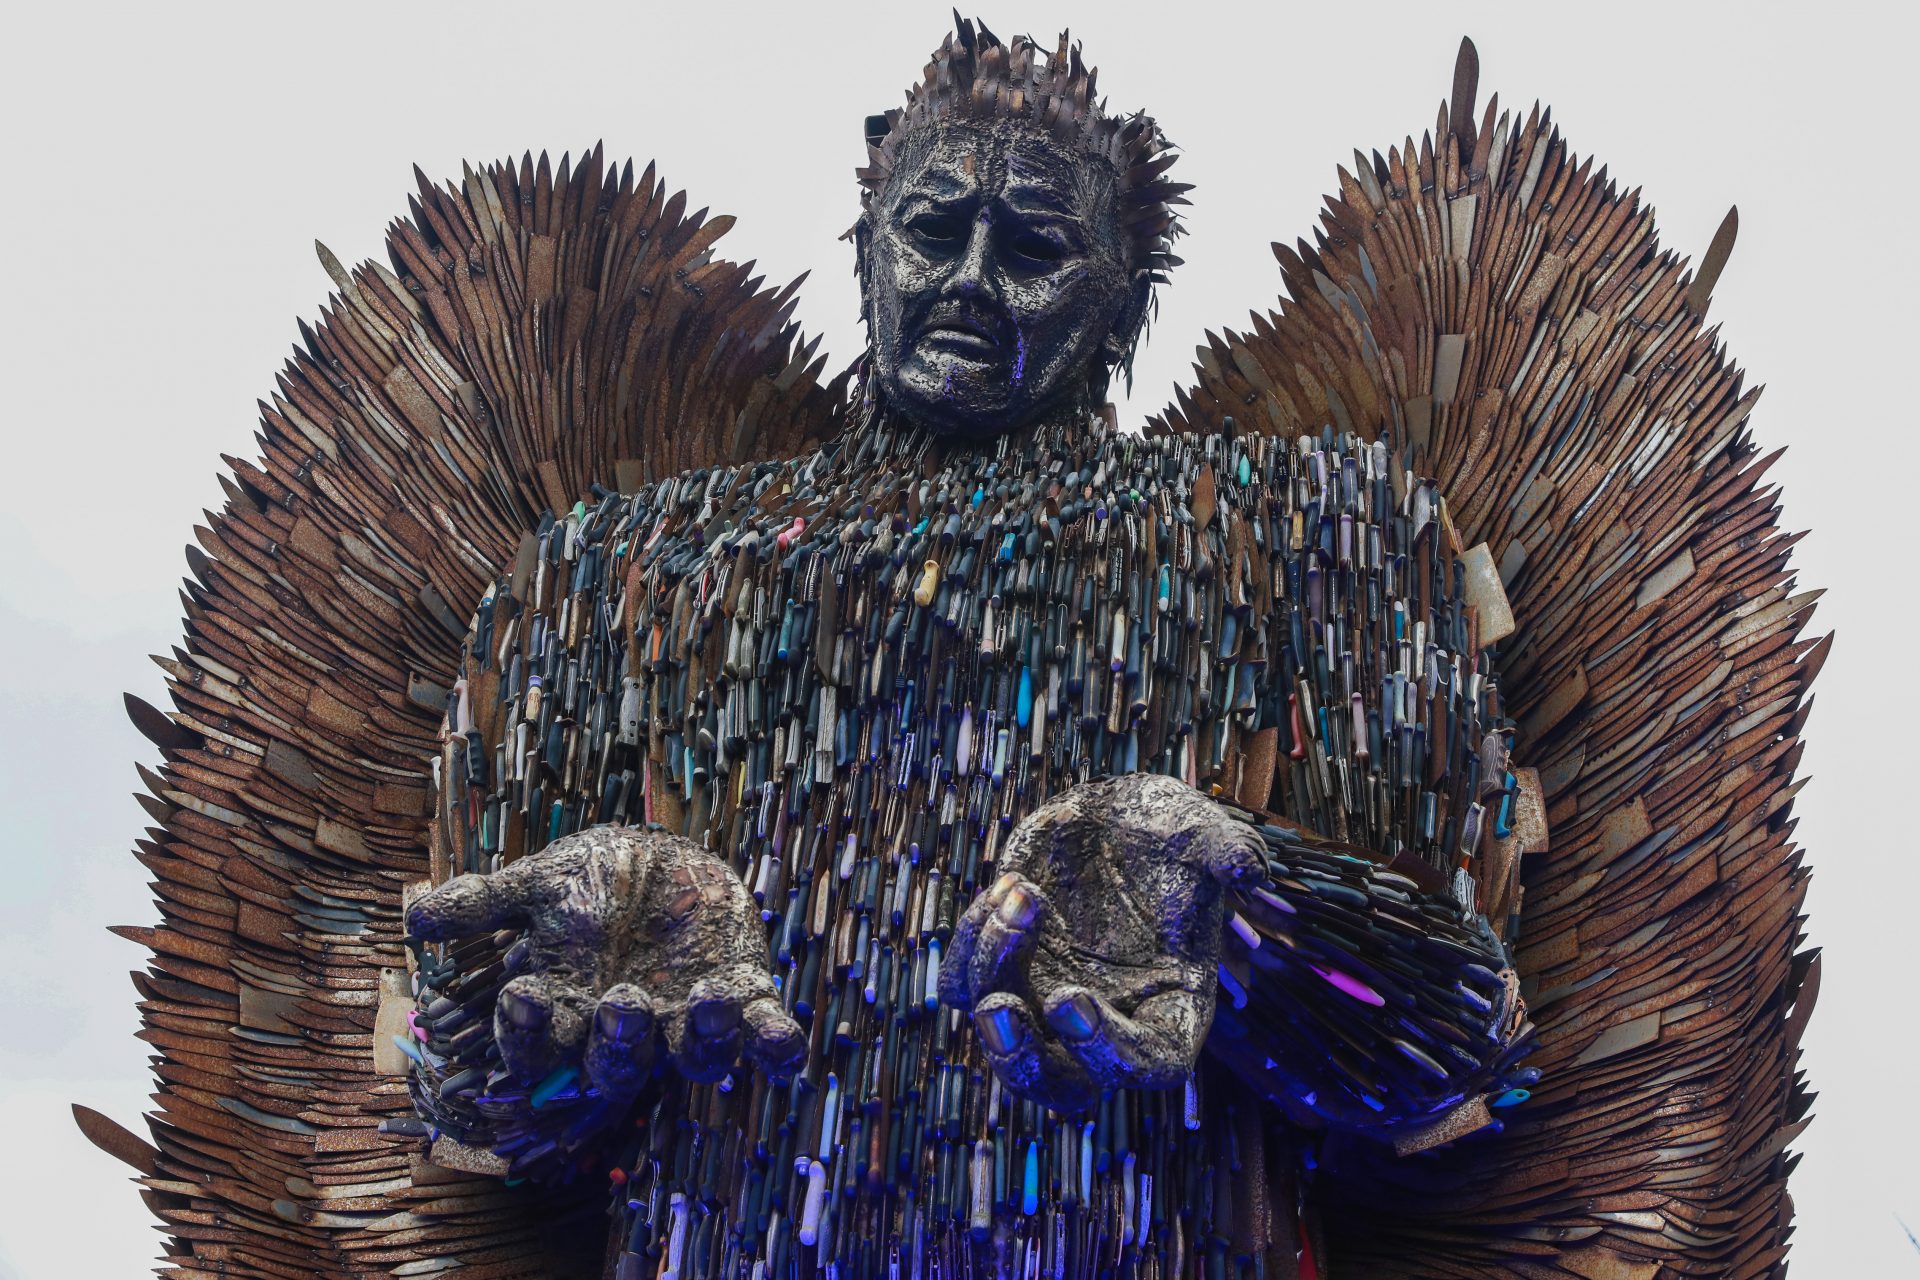 L'Ange aux couteaux : une sculpture macabre qui divise le Royaume-Uni